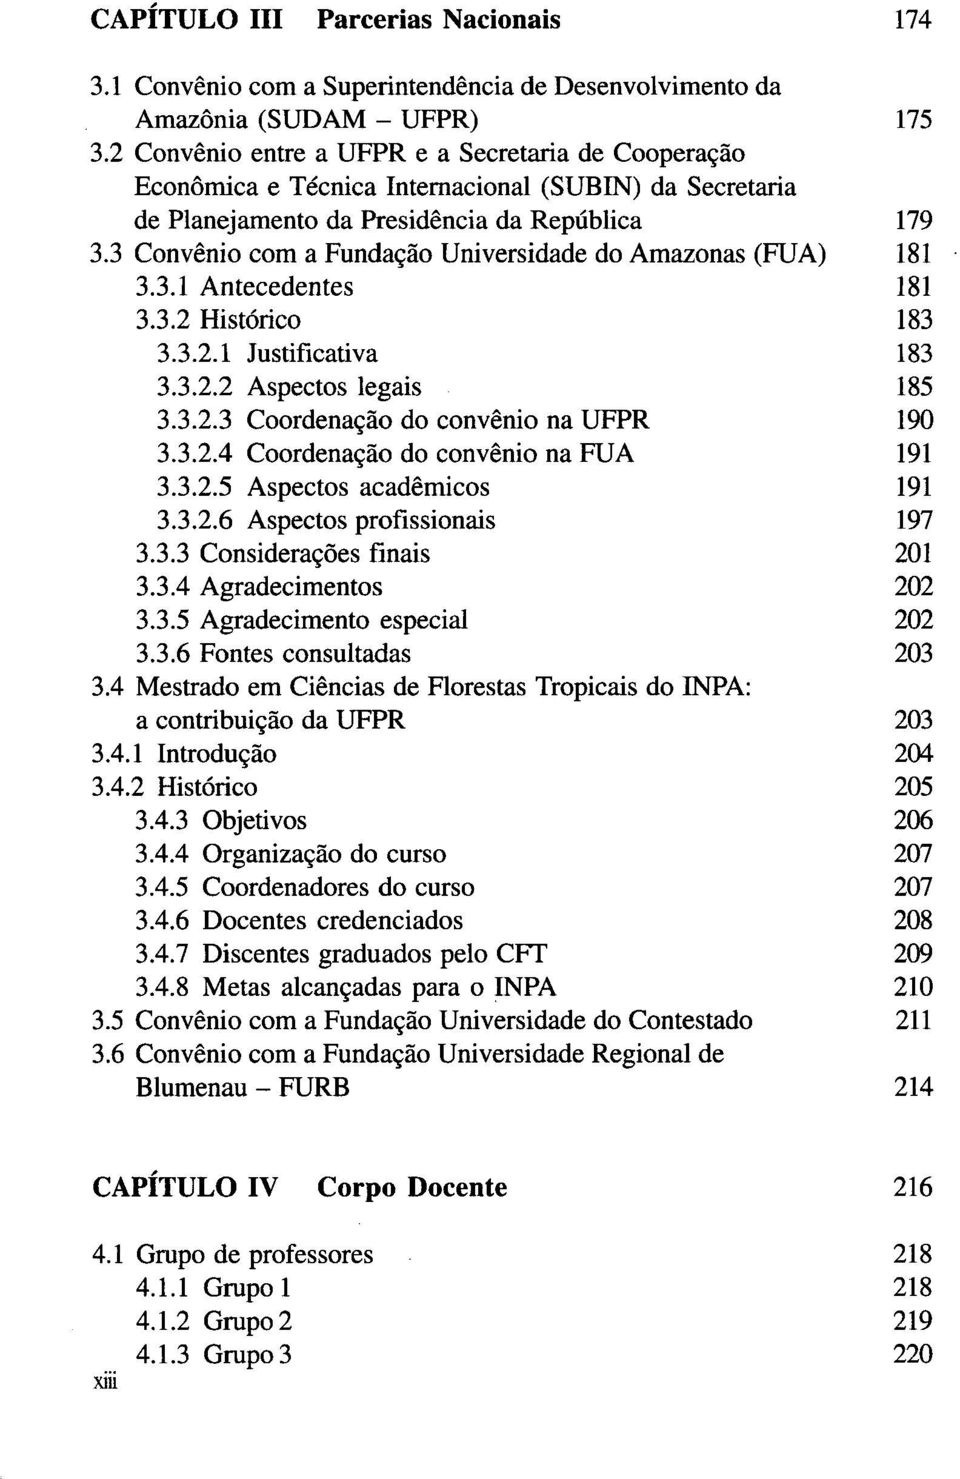 3 Convénio com a Fundação Universidade do Amazonas (FUA) 181 3.3.1 Antecedentes 181 3.3.2 Histórico 183 3.3.2.1 Justificativa 183 3.3.2.2 Aspectos legais 185 3.3.2.3 Coordenação do convénio na UFPR 190 3.